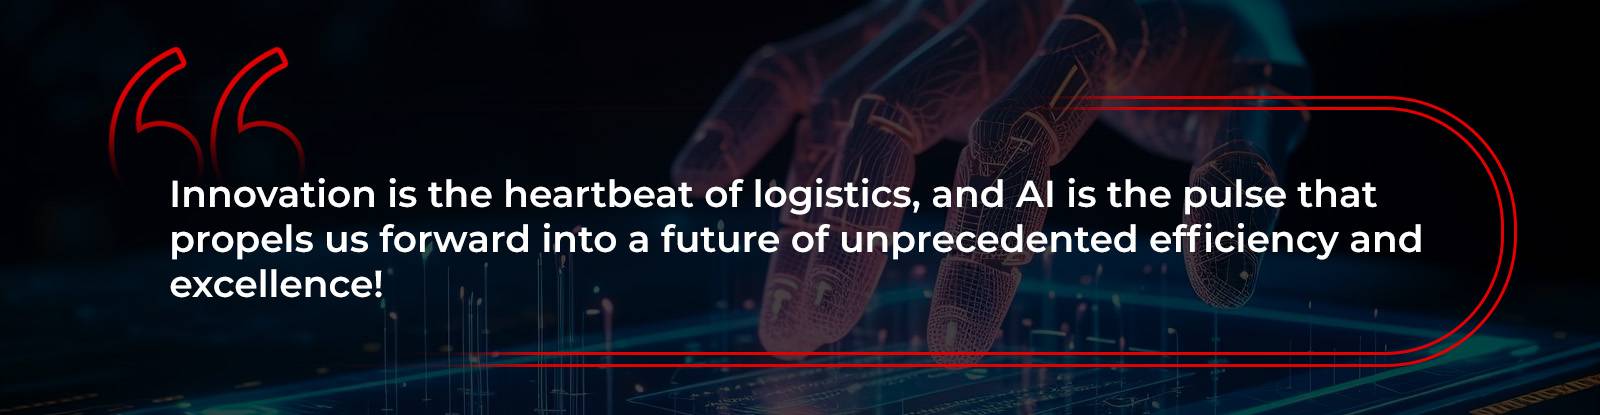 Các công ty và CEO hàng đầu nói gì về việc sử dụng AI trong logistics